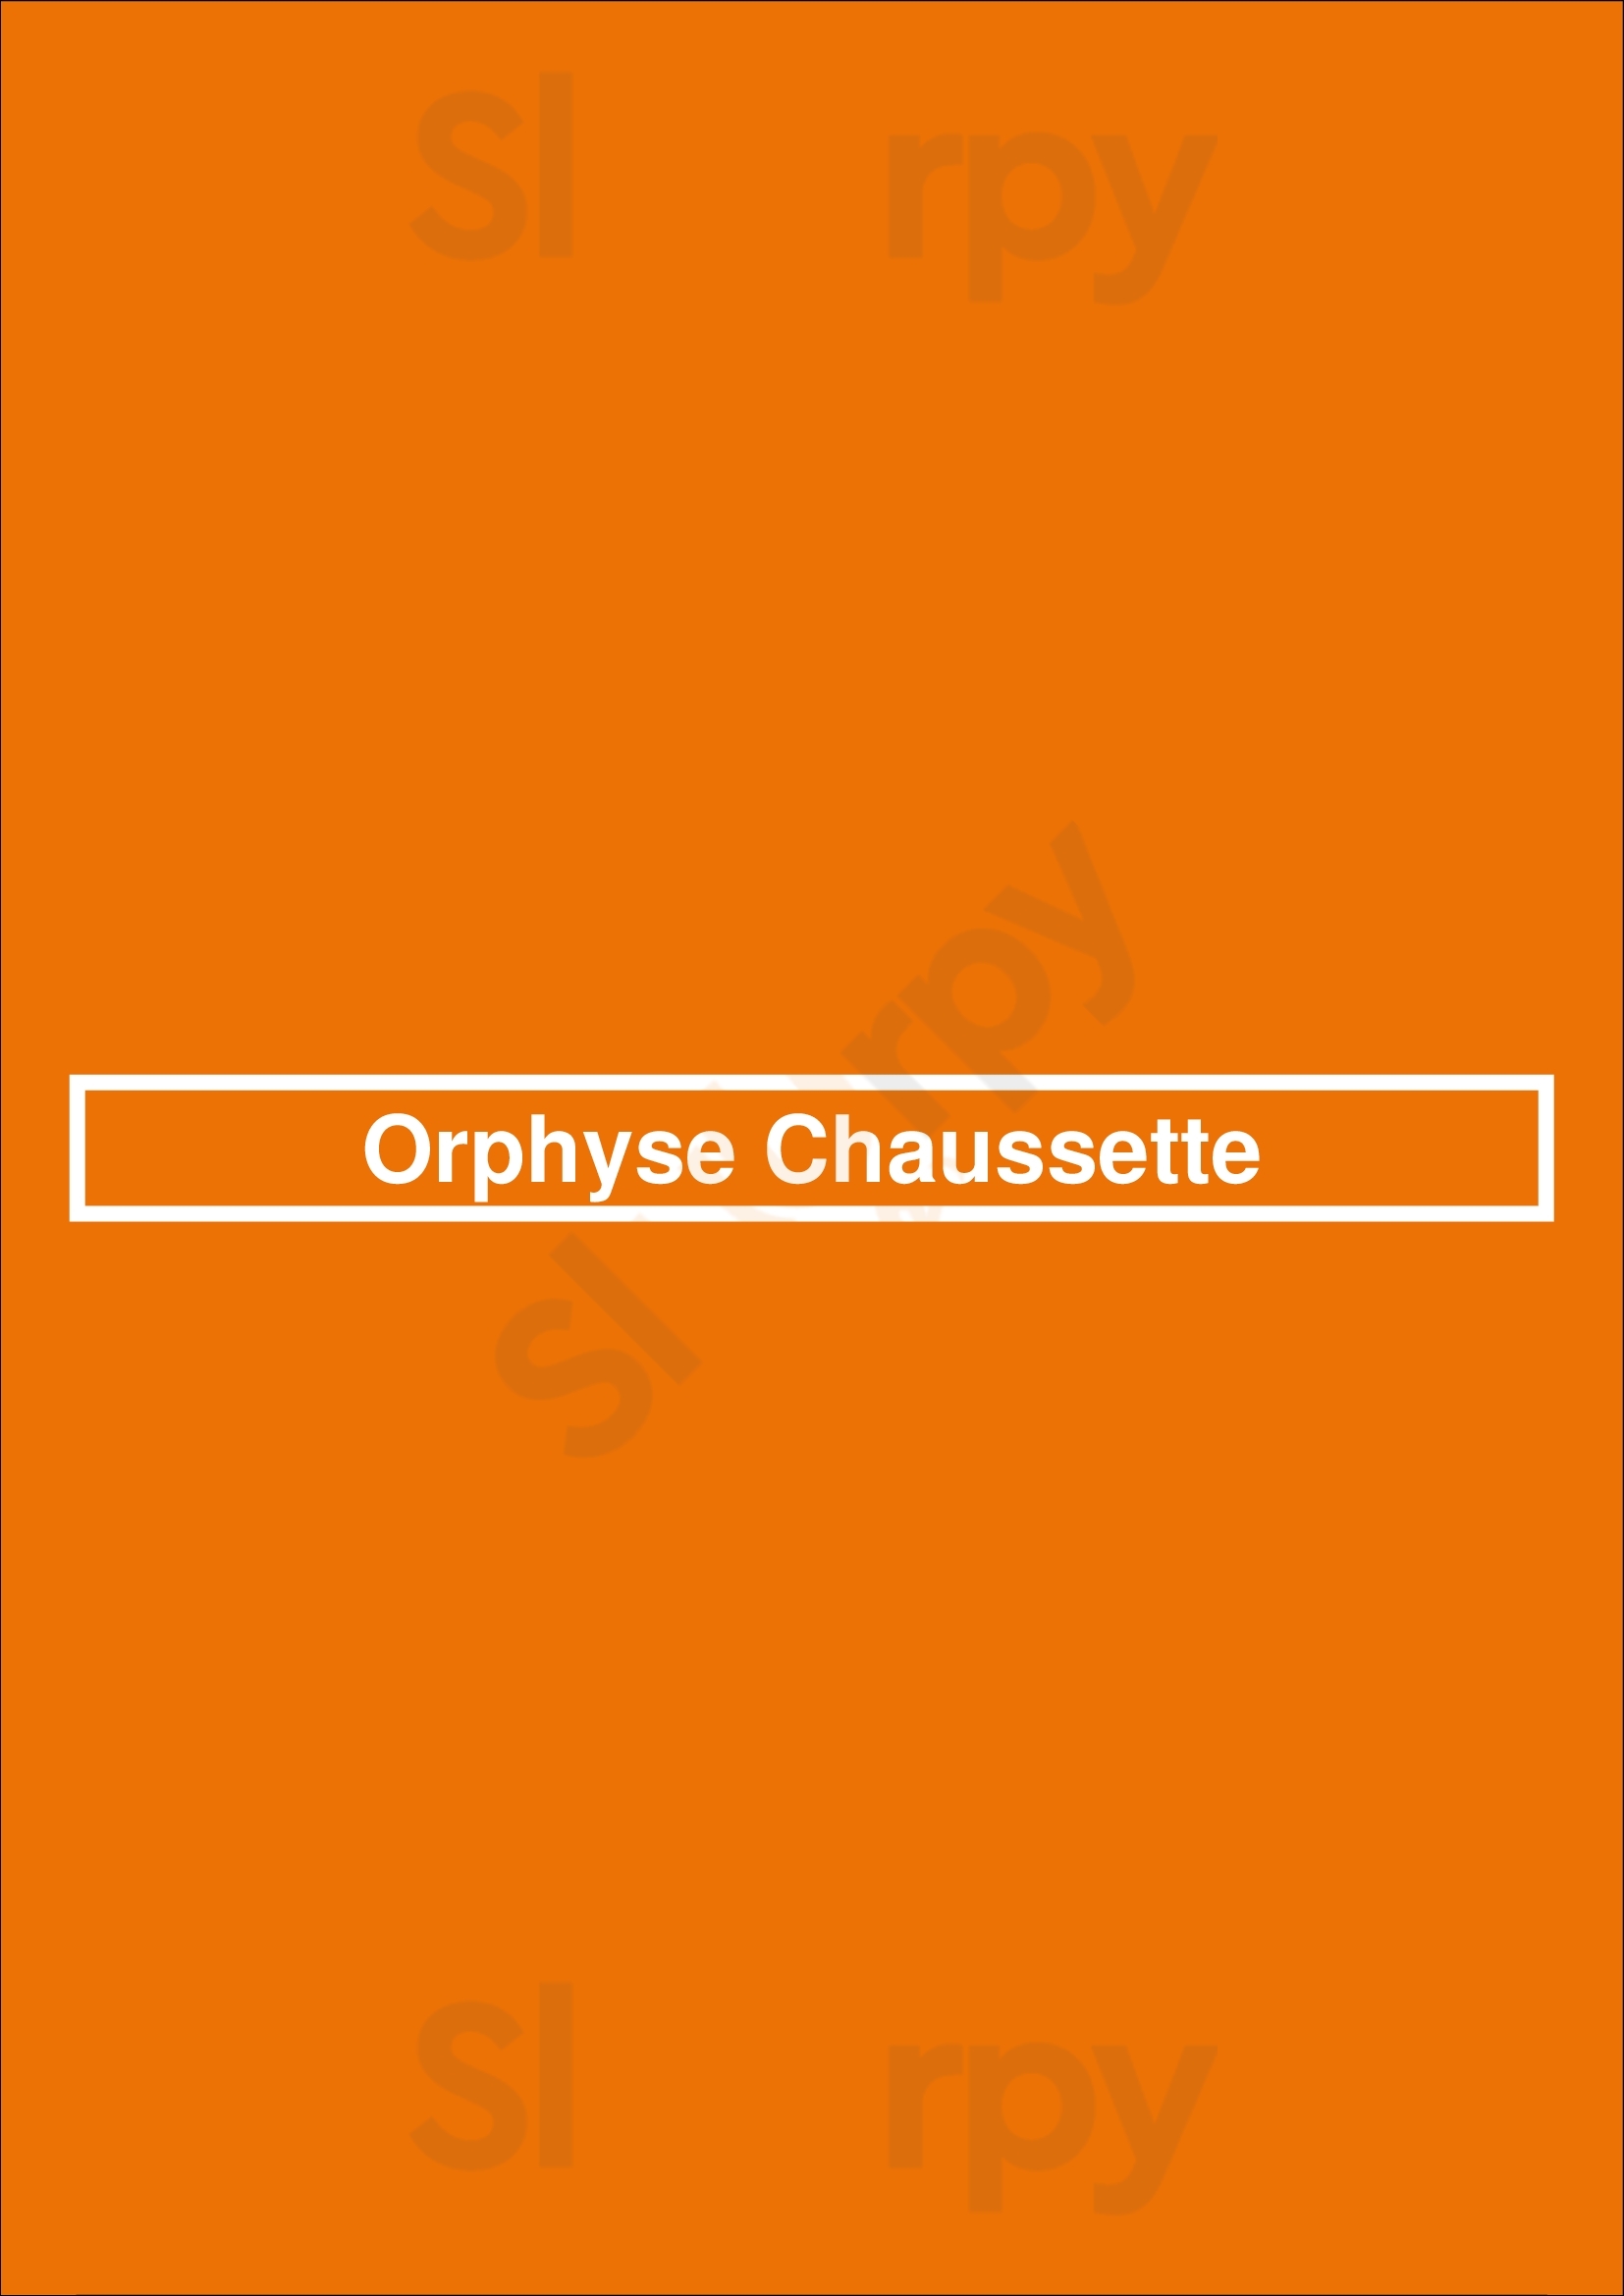 Orphyse Chaussette Bruxelles Menu - 1